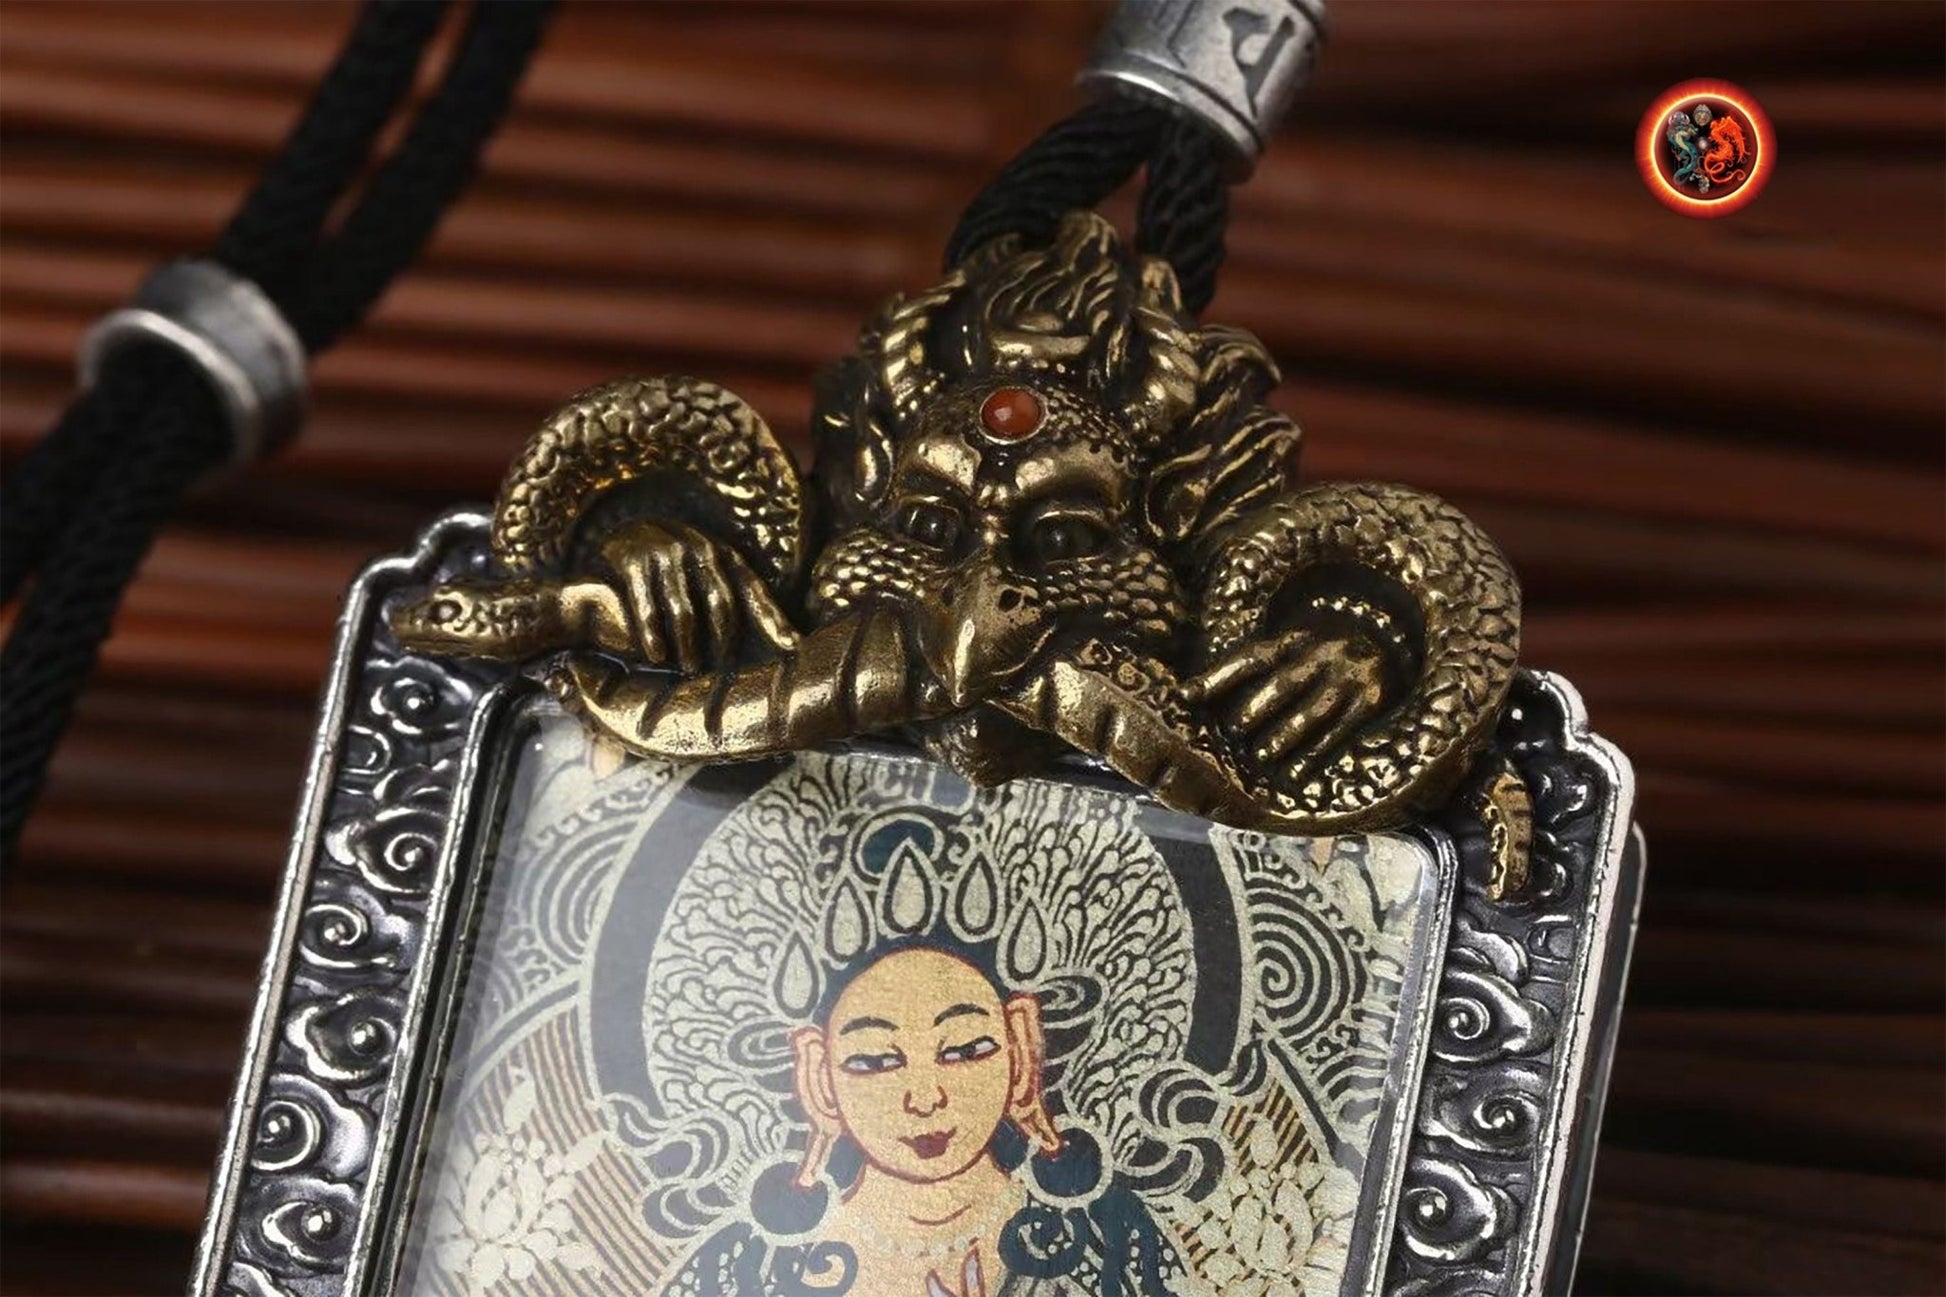 Pendentif bouddha, Amulette, reliquaire protection bouddhisme tibétain Tara verte argent 925, bronze. thangka peint à la main dorje tournant au verso. - obsidian dragon